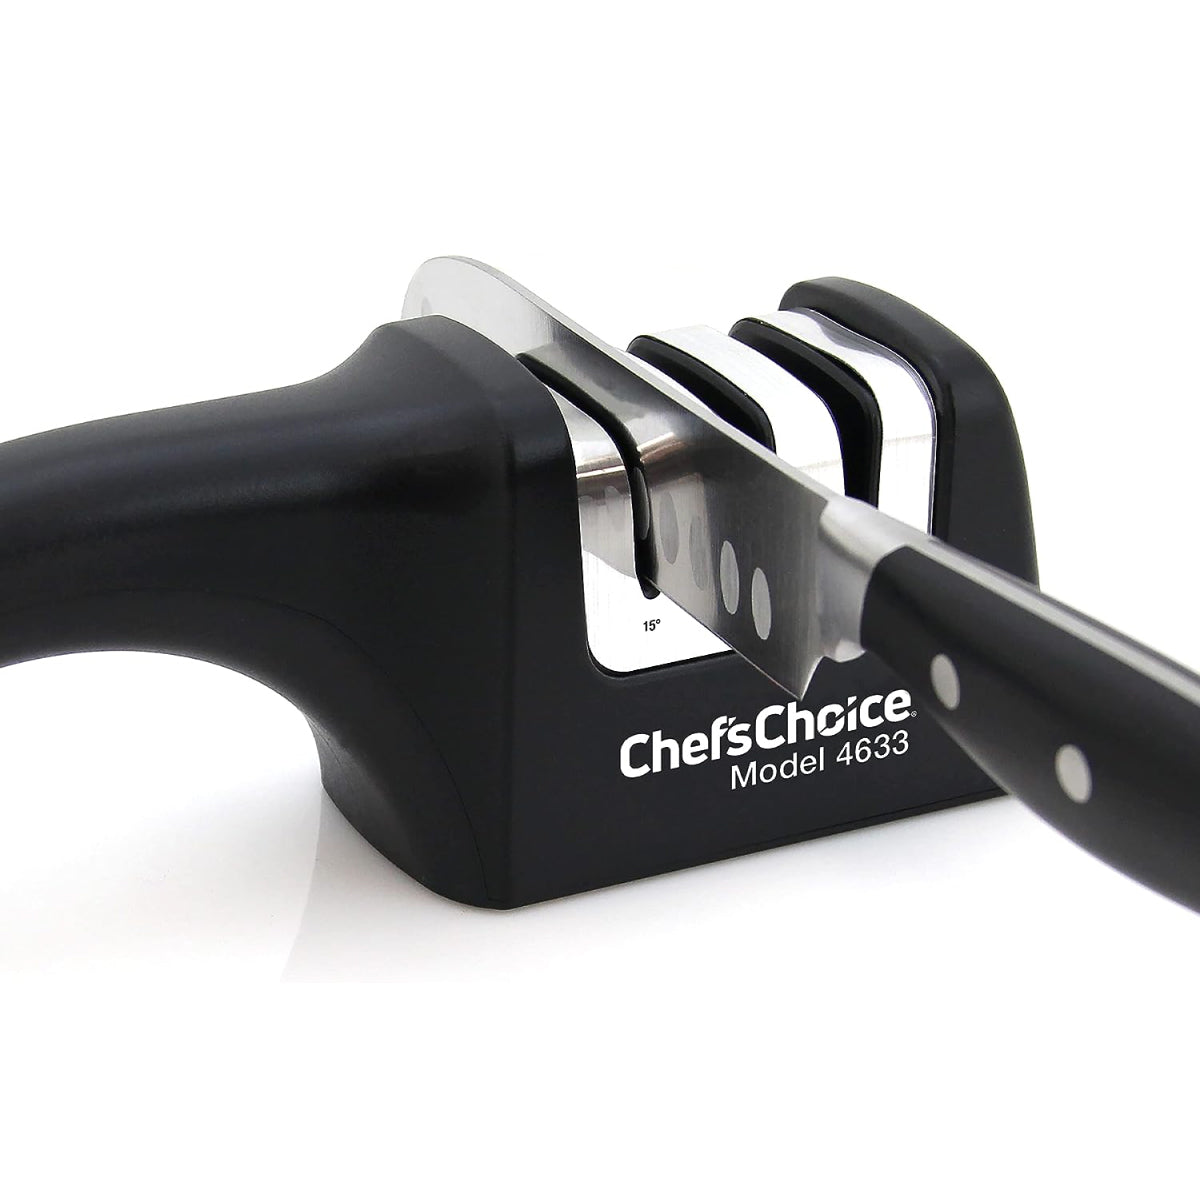 Afilador de cuchillos manual AngleSelect Diamond Hone Chef’sChoice 4633